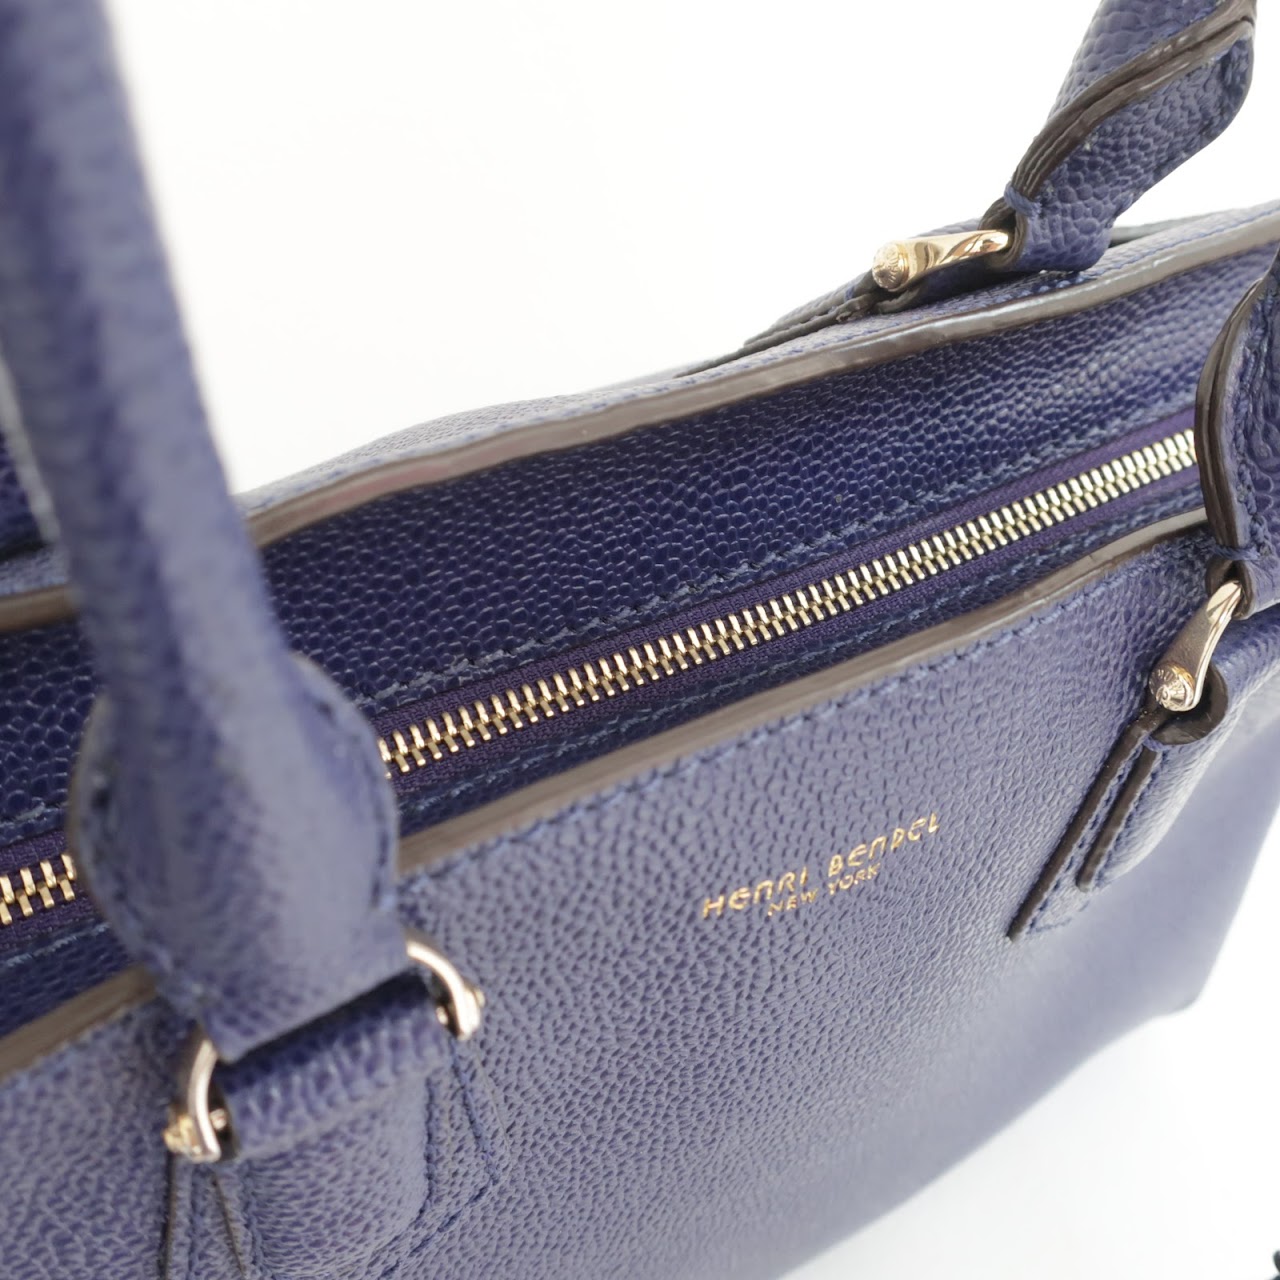 Henri Bendel Purple Leather Shoulder Bag